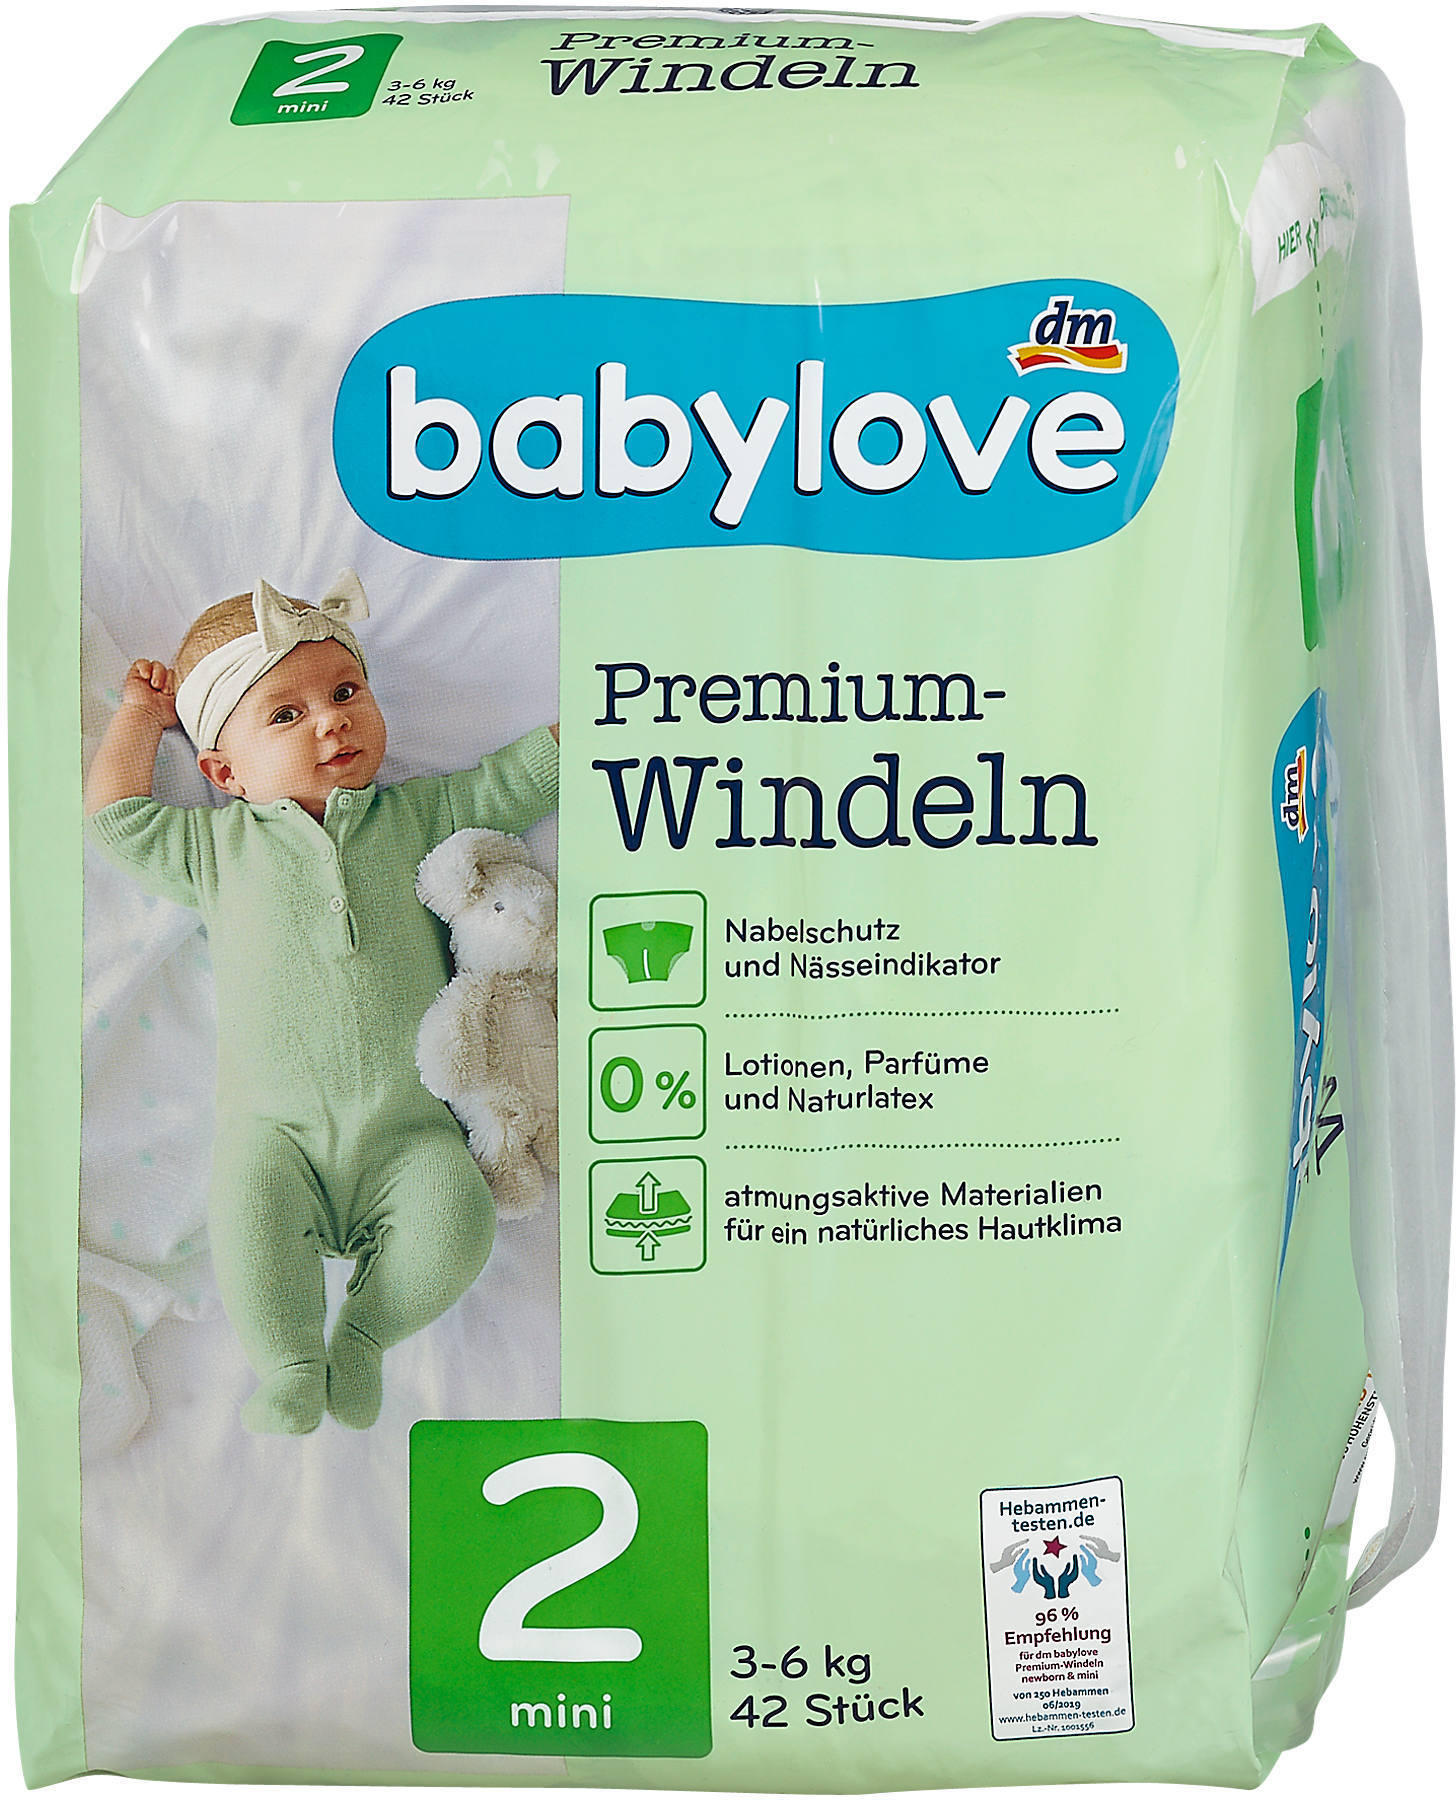 babylove Windeln Premium extra weich Größe 2 mini 3-6kg 1 x 42 St 